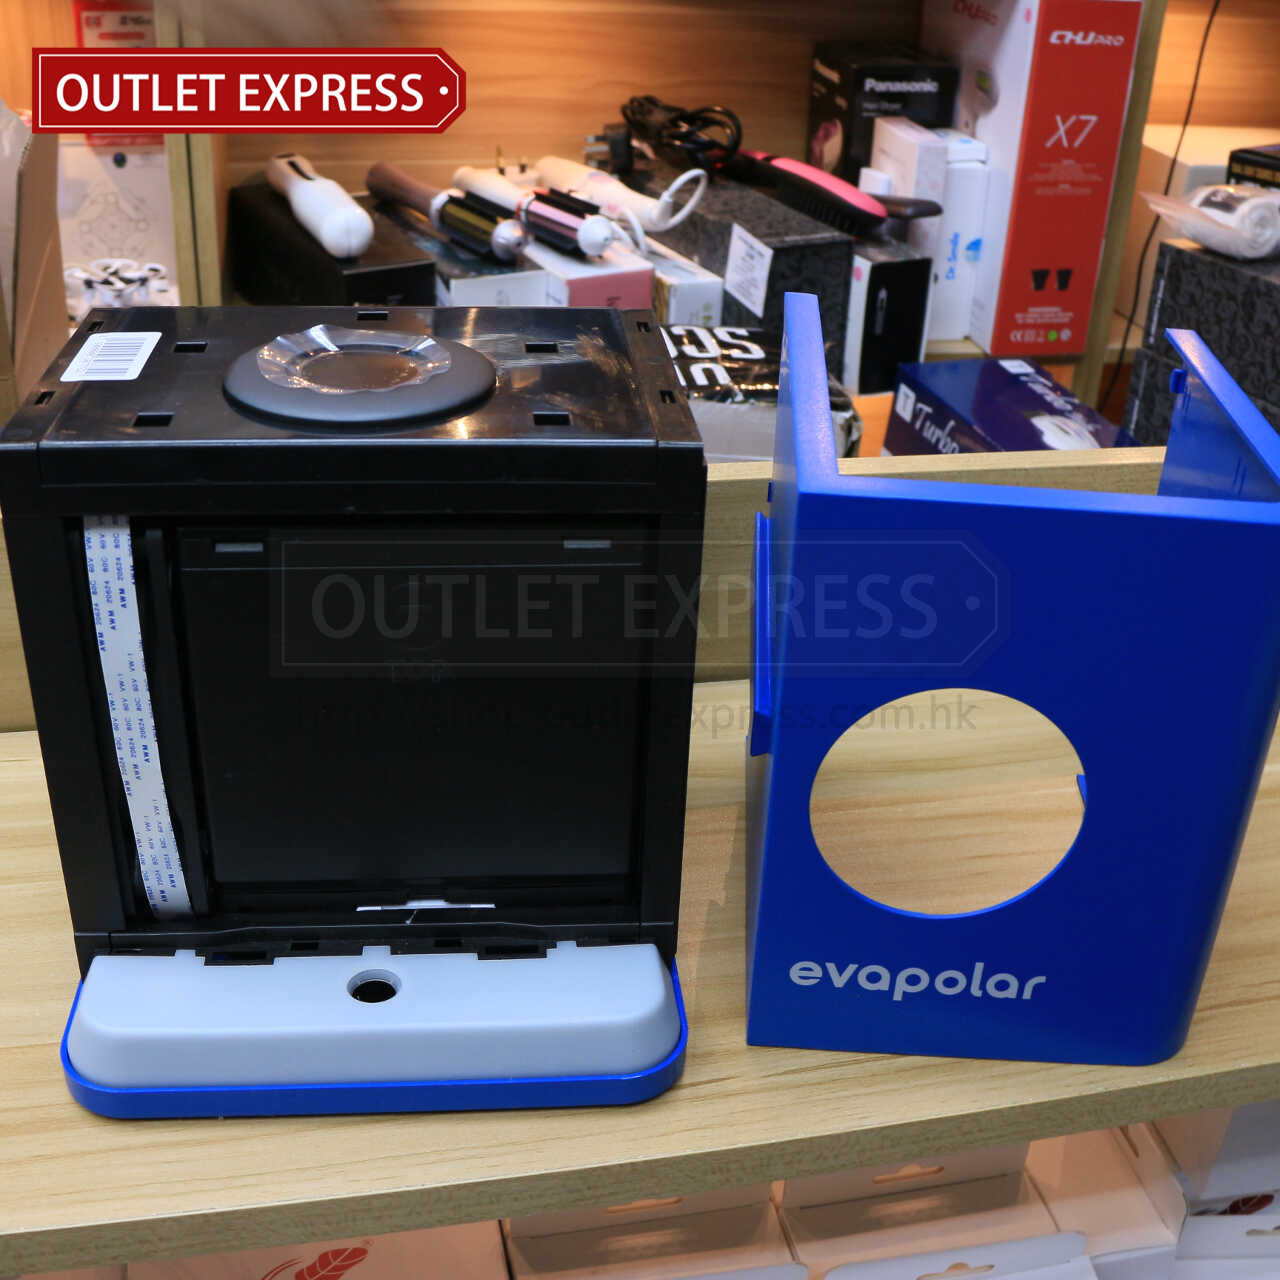 Evapolar 小型流動冷氣機主機過濾芯- Outlet Express HK生活百貨城實拍相片